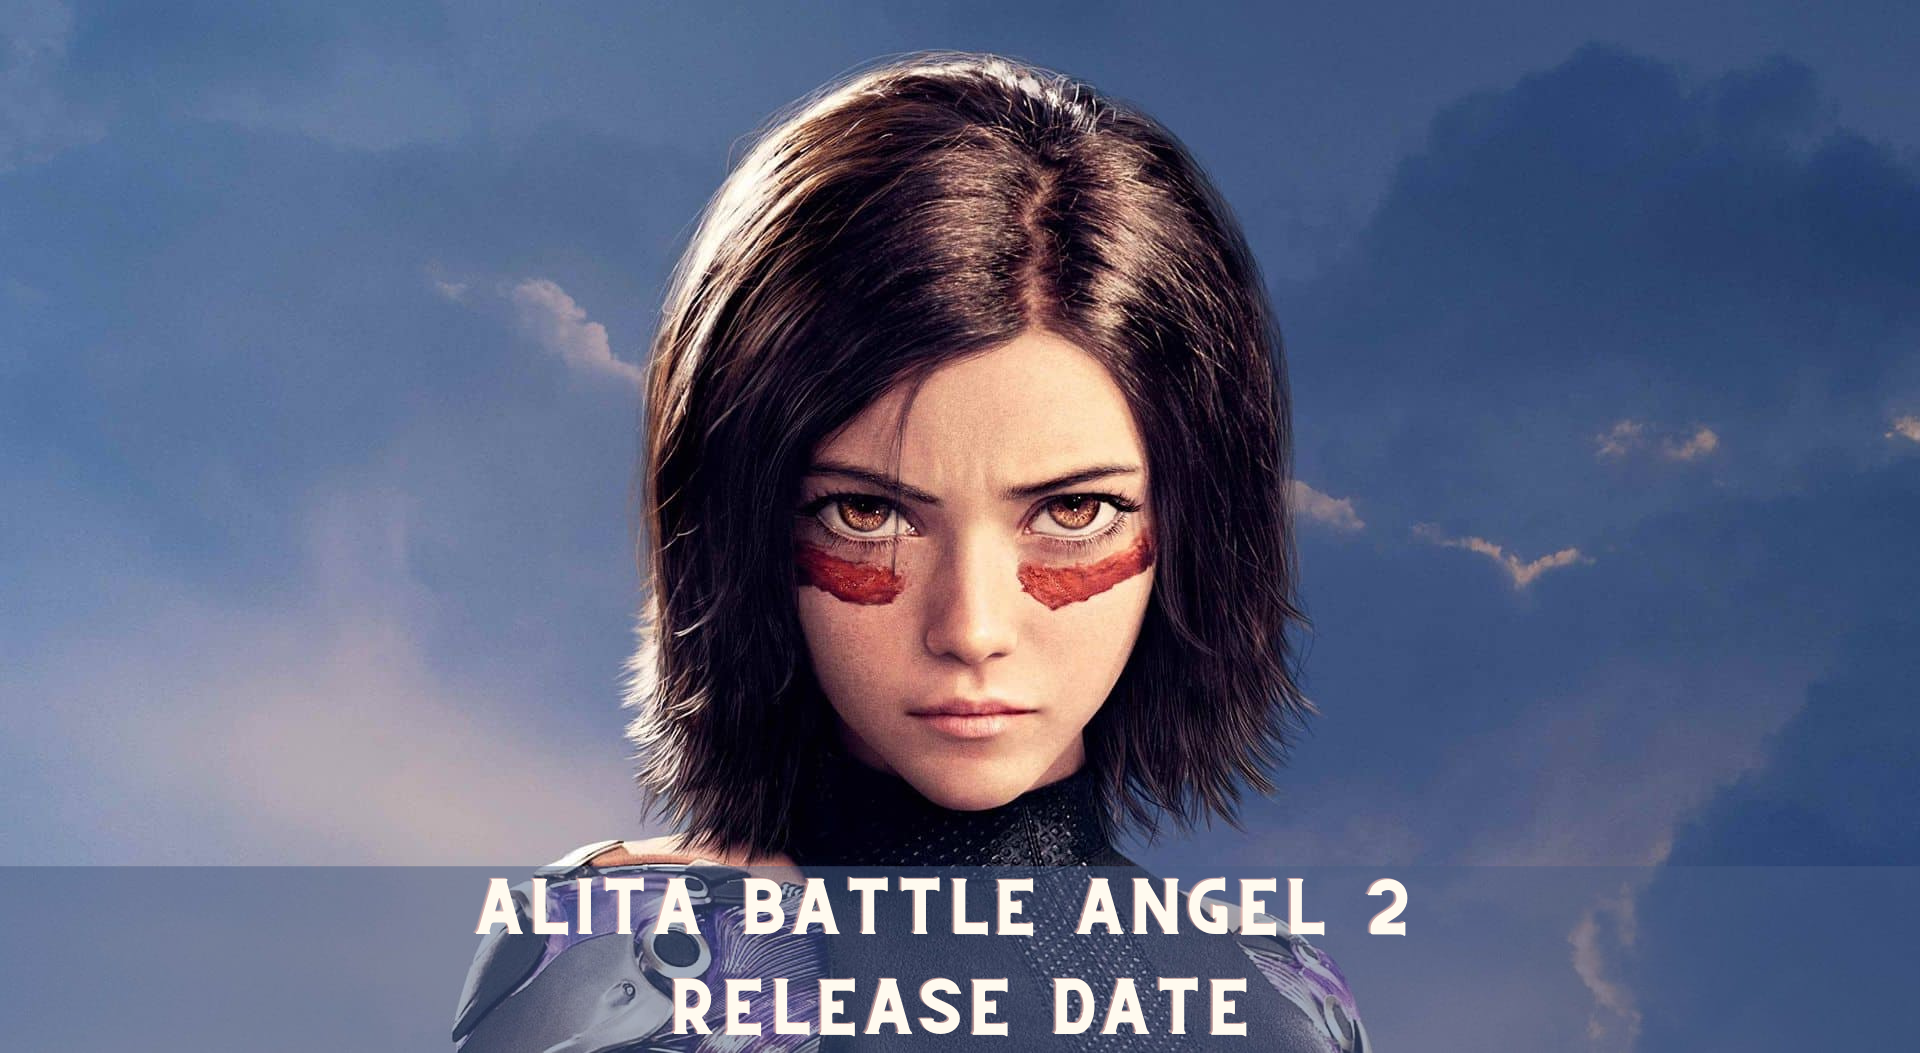 Alita Battle Angel 2 Release Date